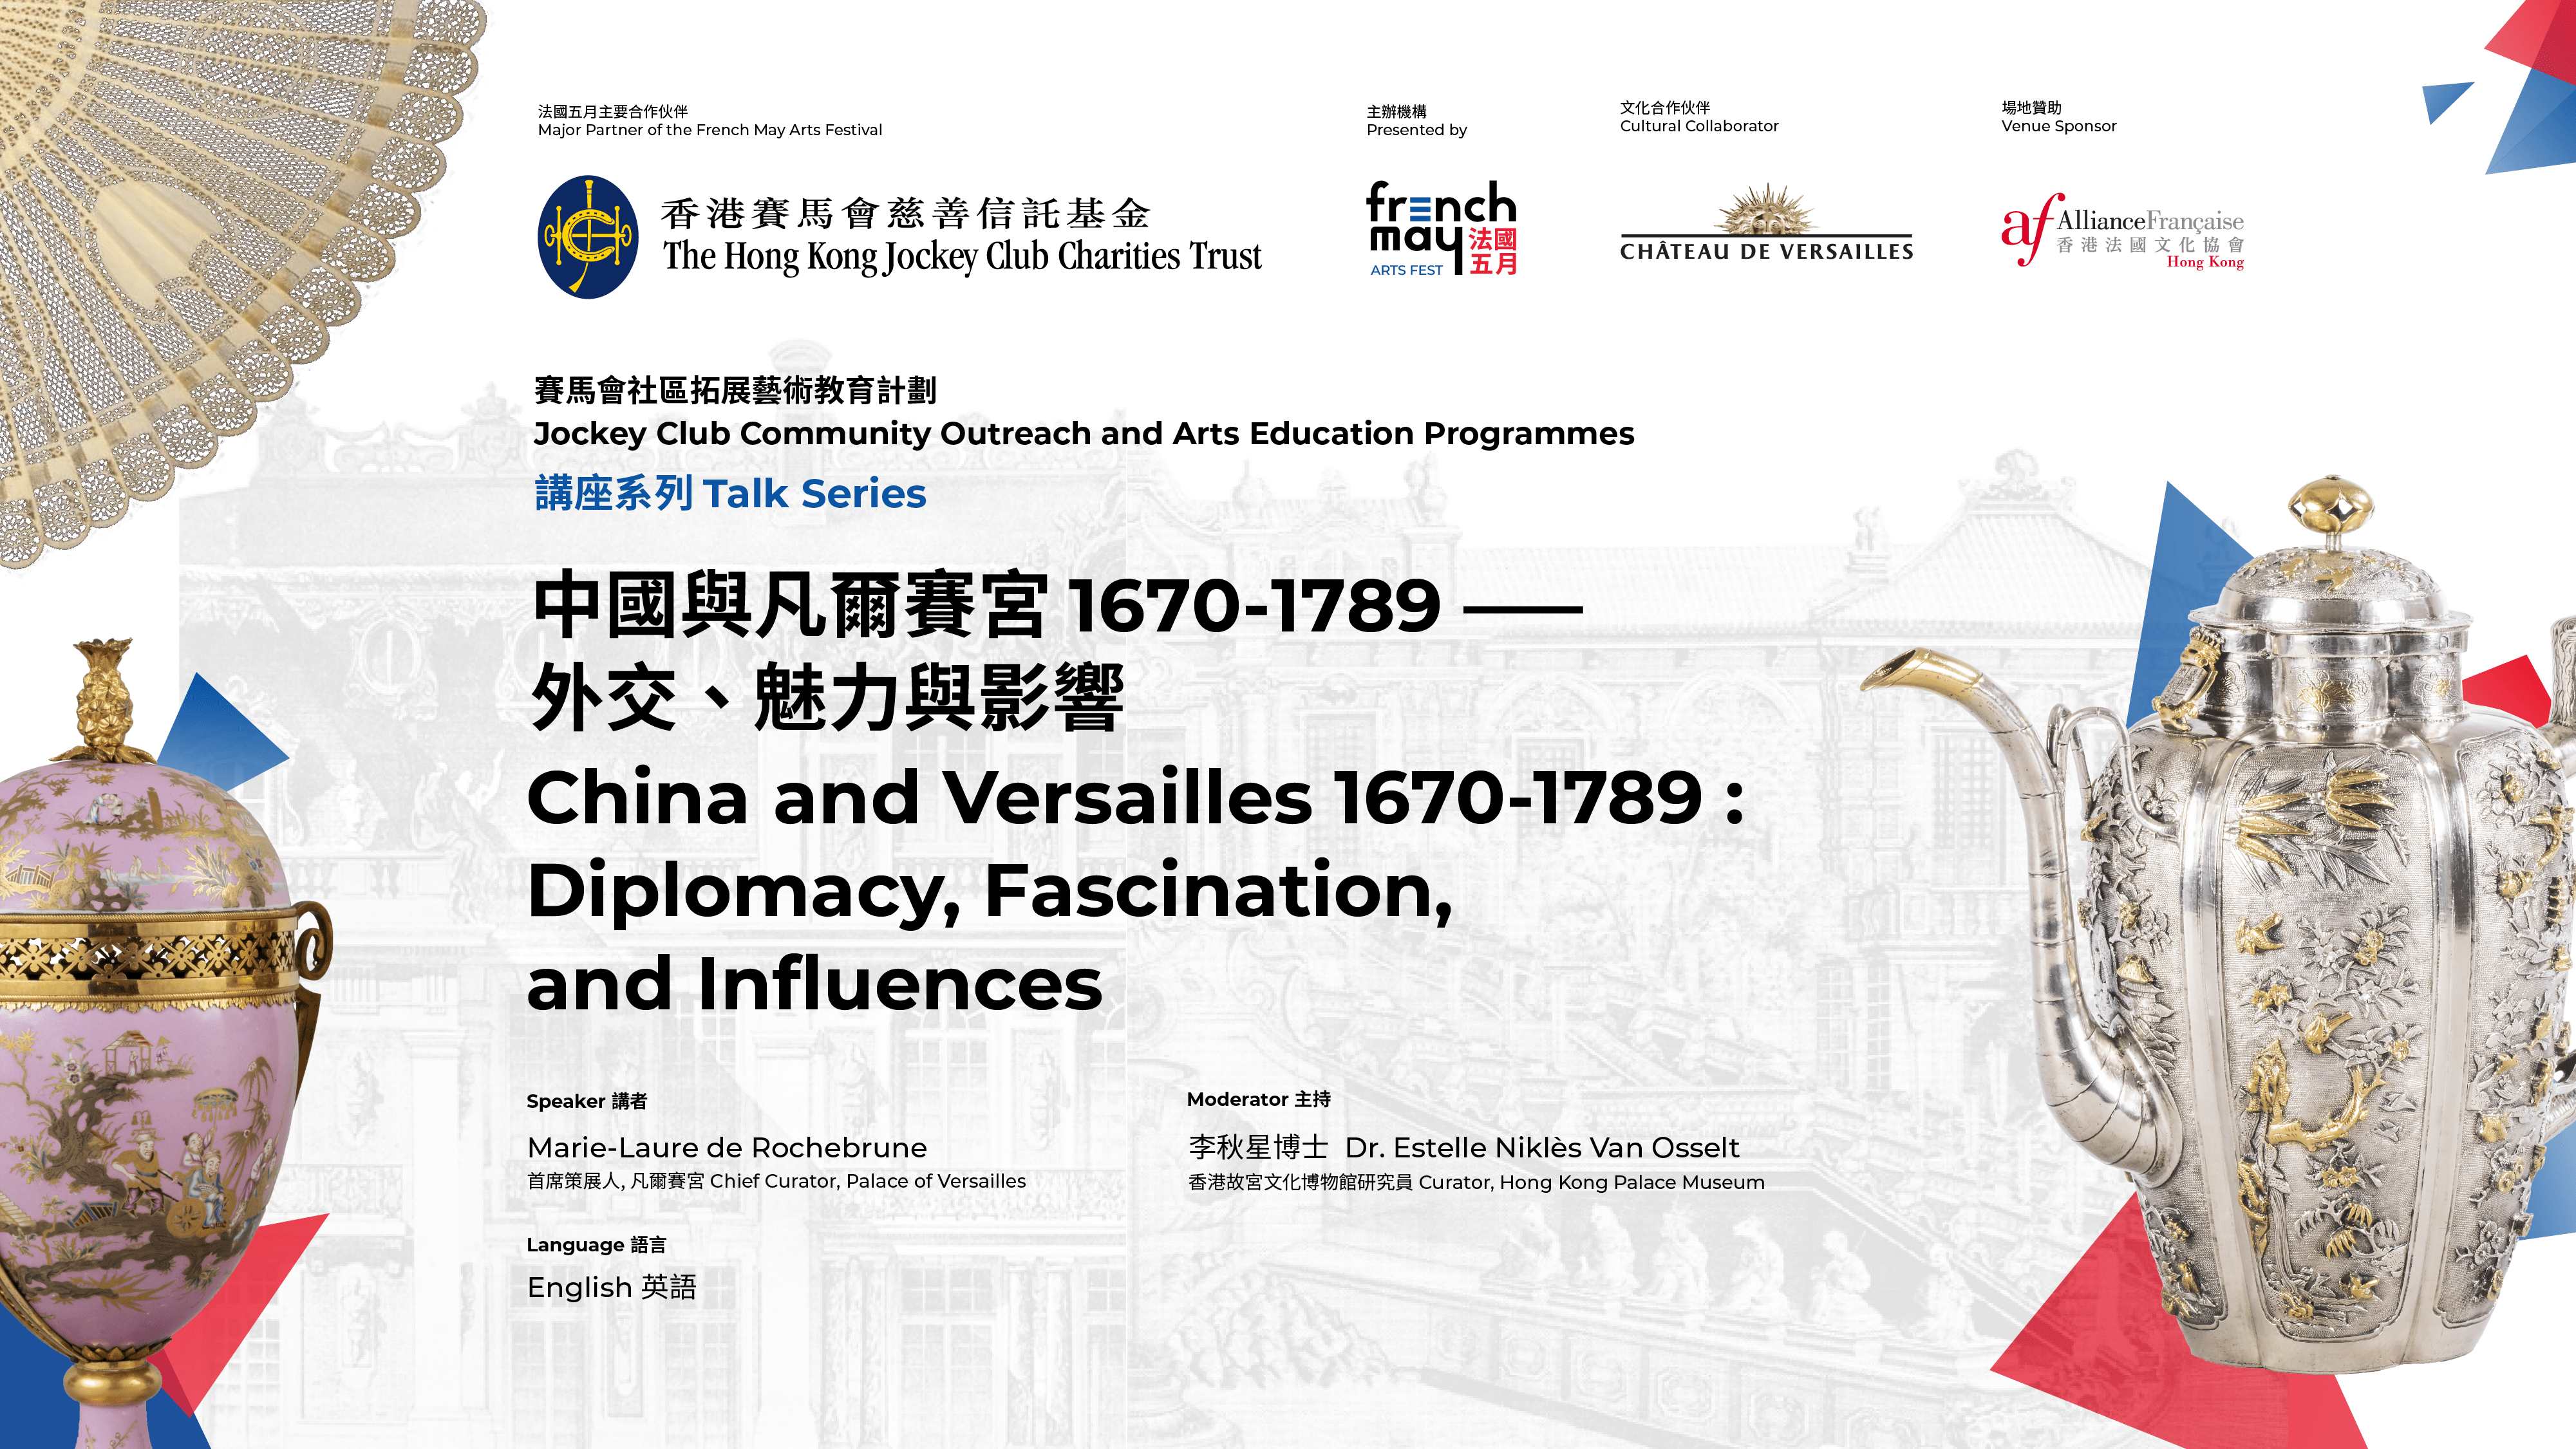 中國與凡爾賽宮 法國文化協會 法國五月藝術節